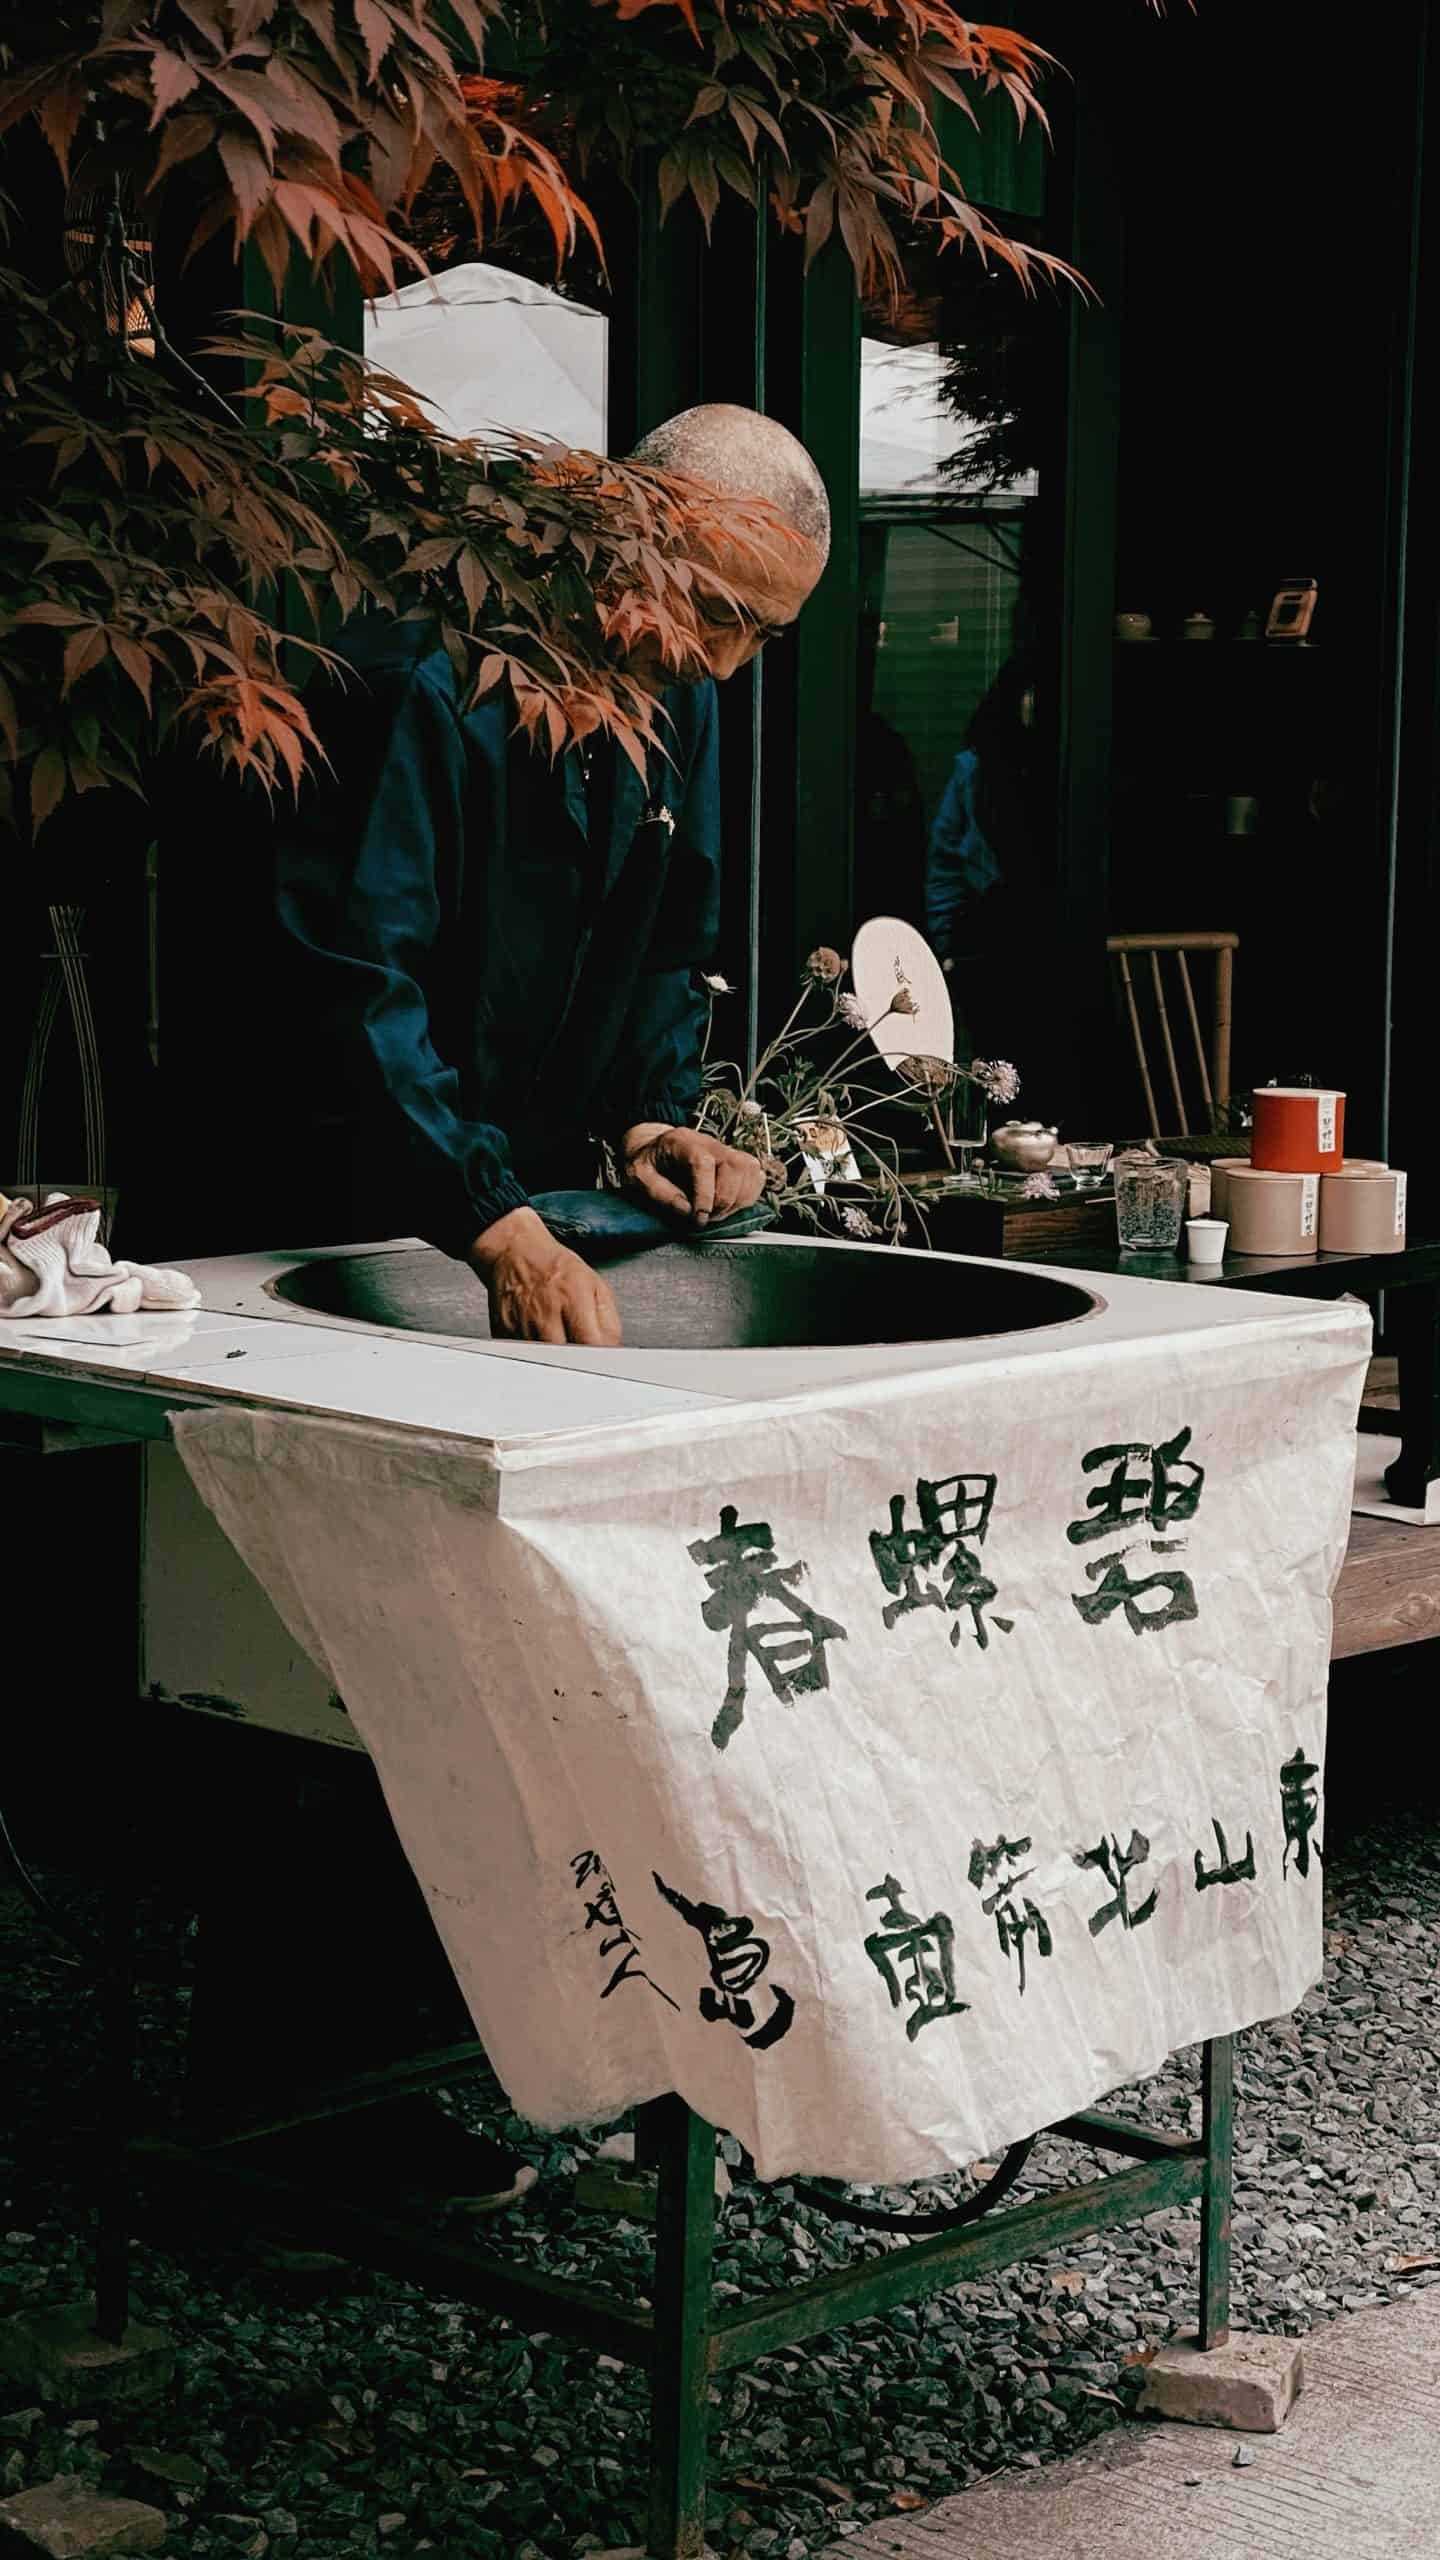 Vendor in Jiangsu Province, China